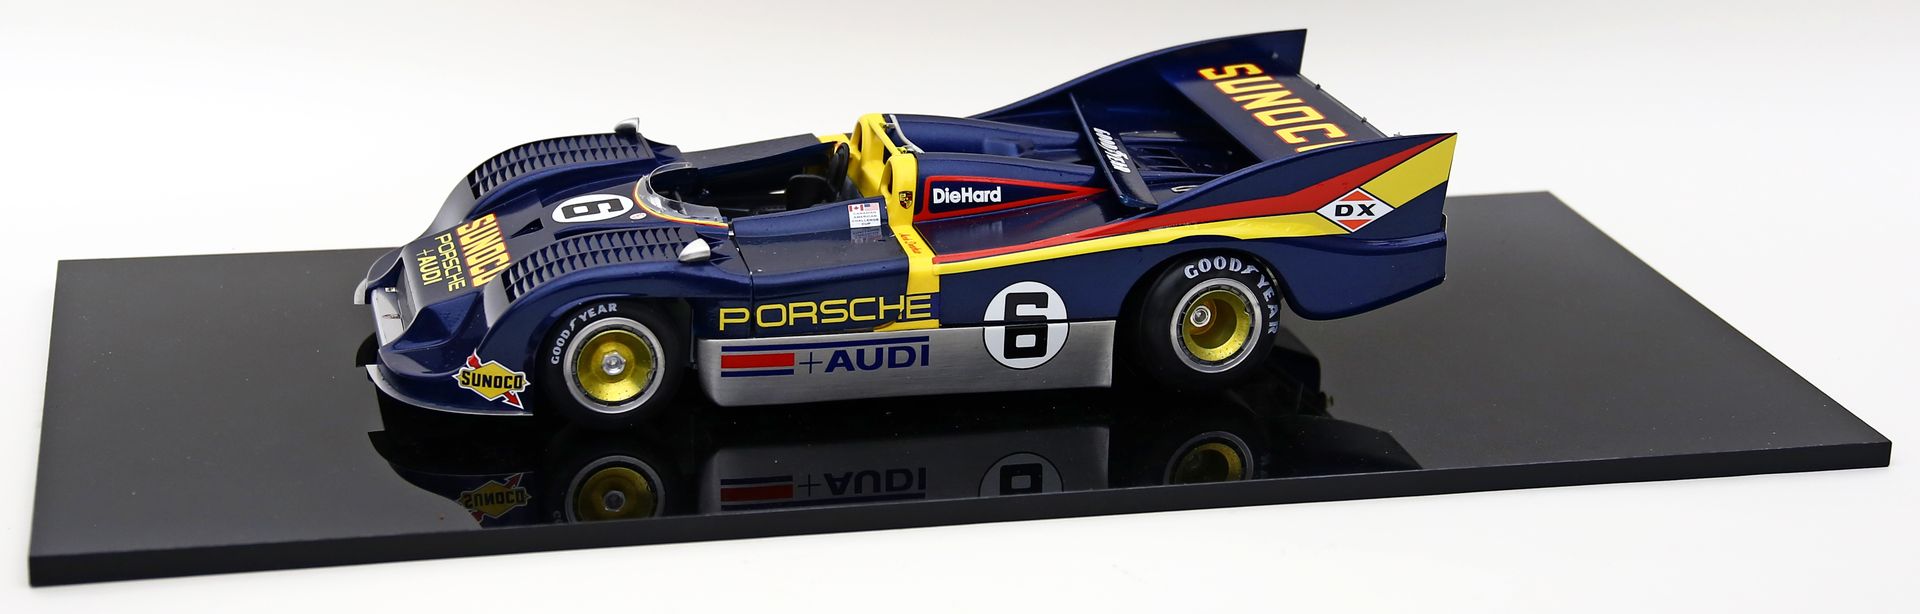 Modellauto "Formel 1-Rennwagen SUNOCO, Porsche und Audi", 1:12.